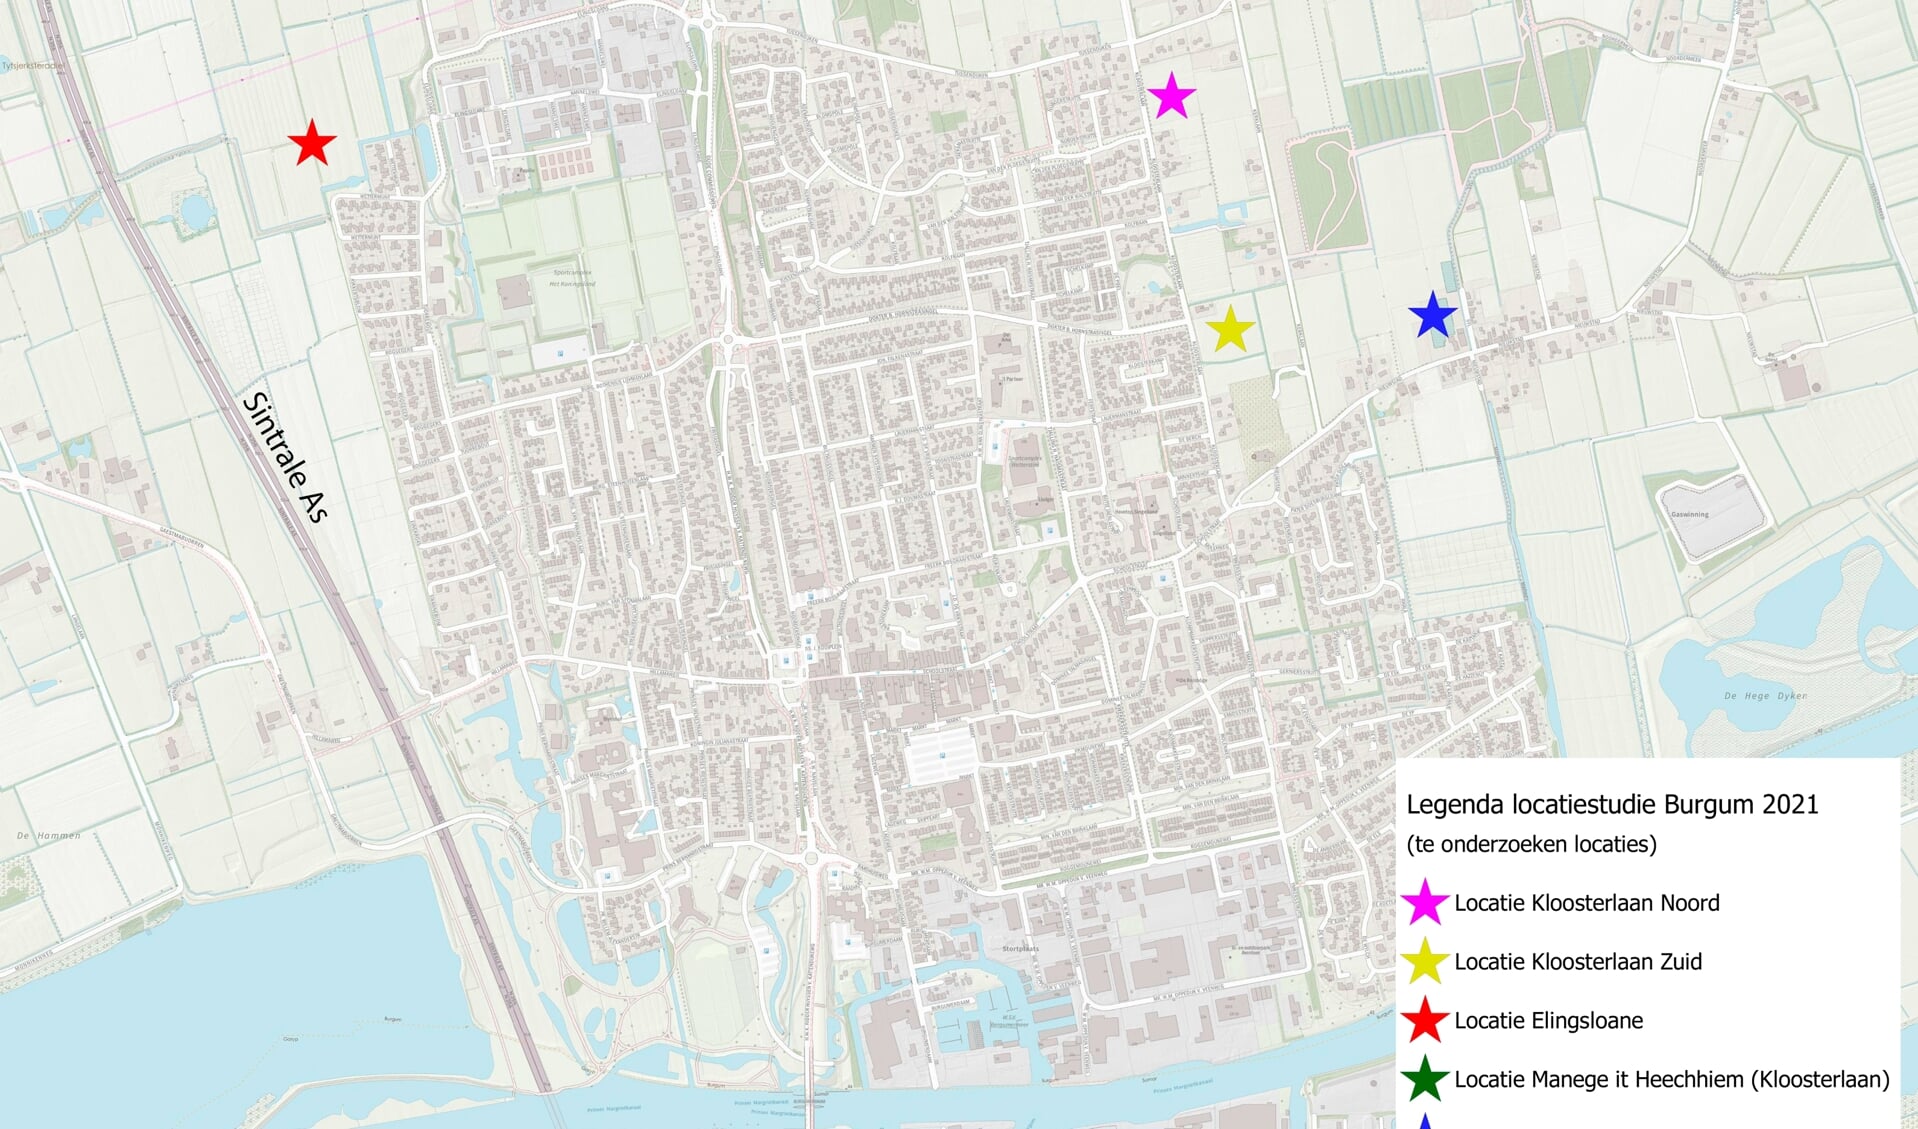 Net boven de roze ster is de groene ster (Locatie Manege) weggevallen. De blauwe ster betreft de locatie Tuincentrum aan de Nieuwstad, de meeste oostelijke locatie.